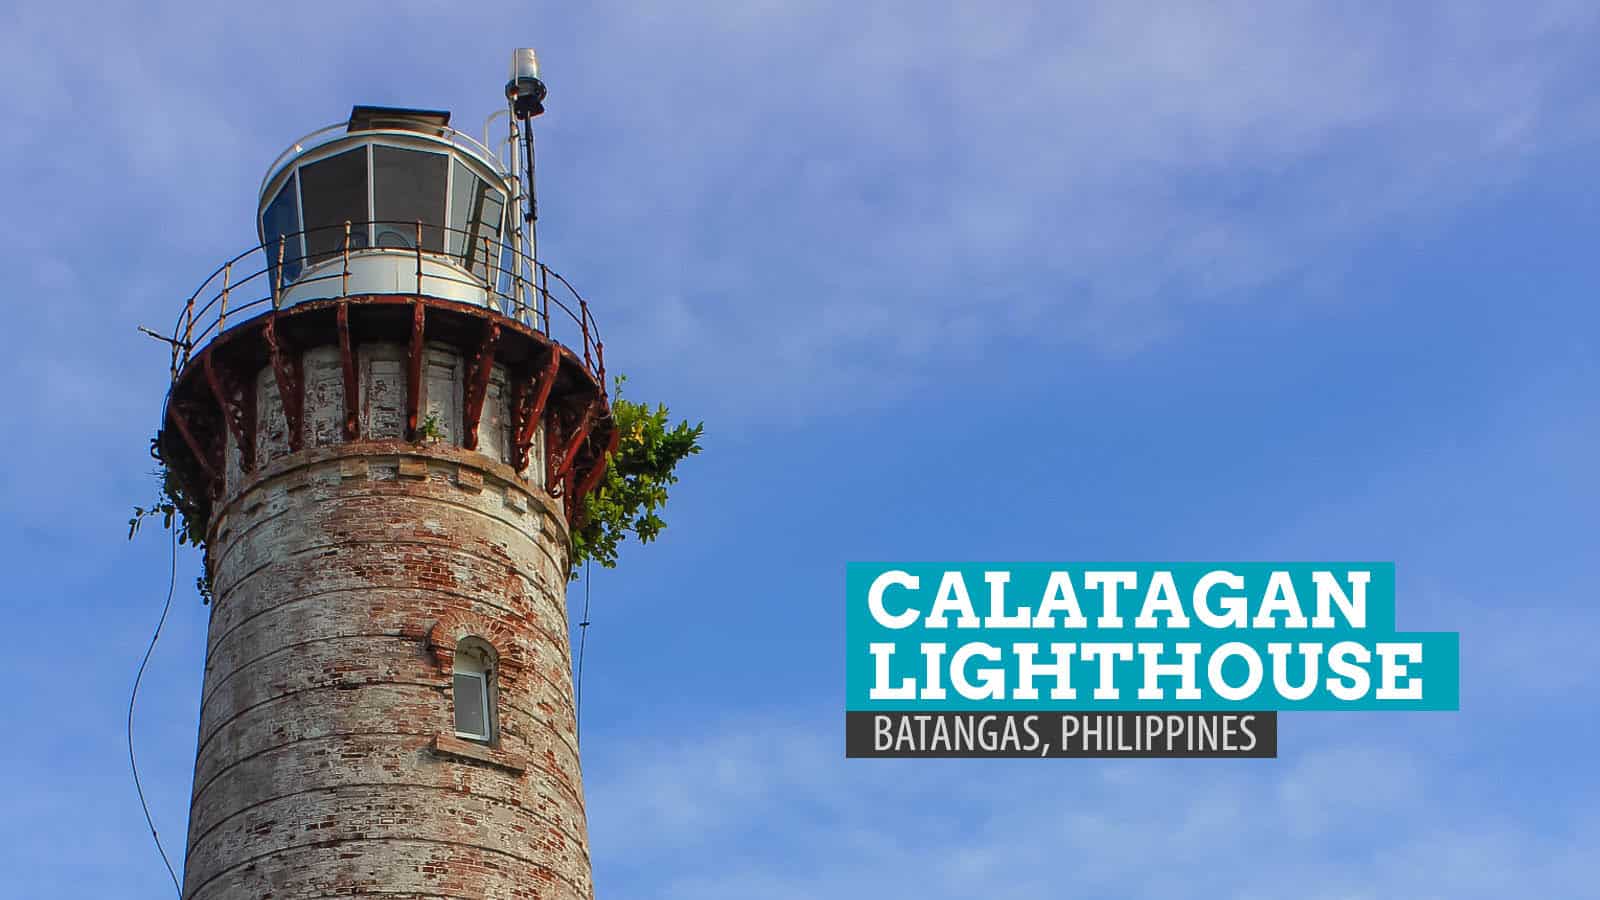 卡拉塔甘灯塔:菲律宾巴丹加斯繁忙的灯塔